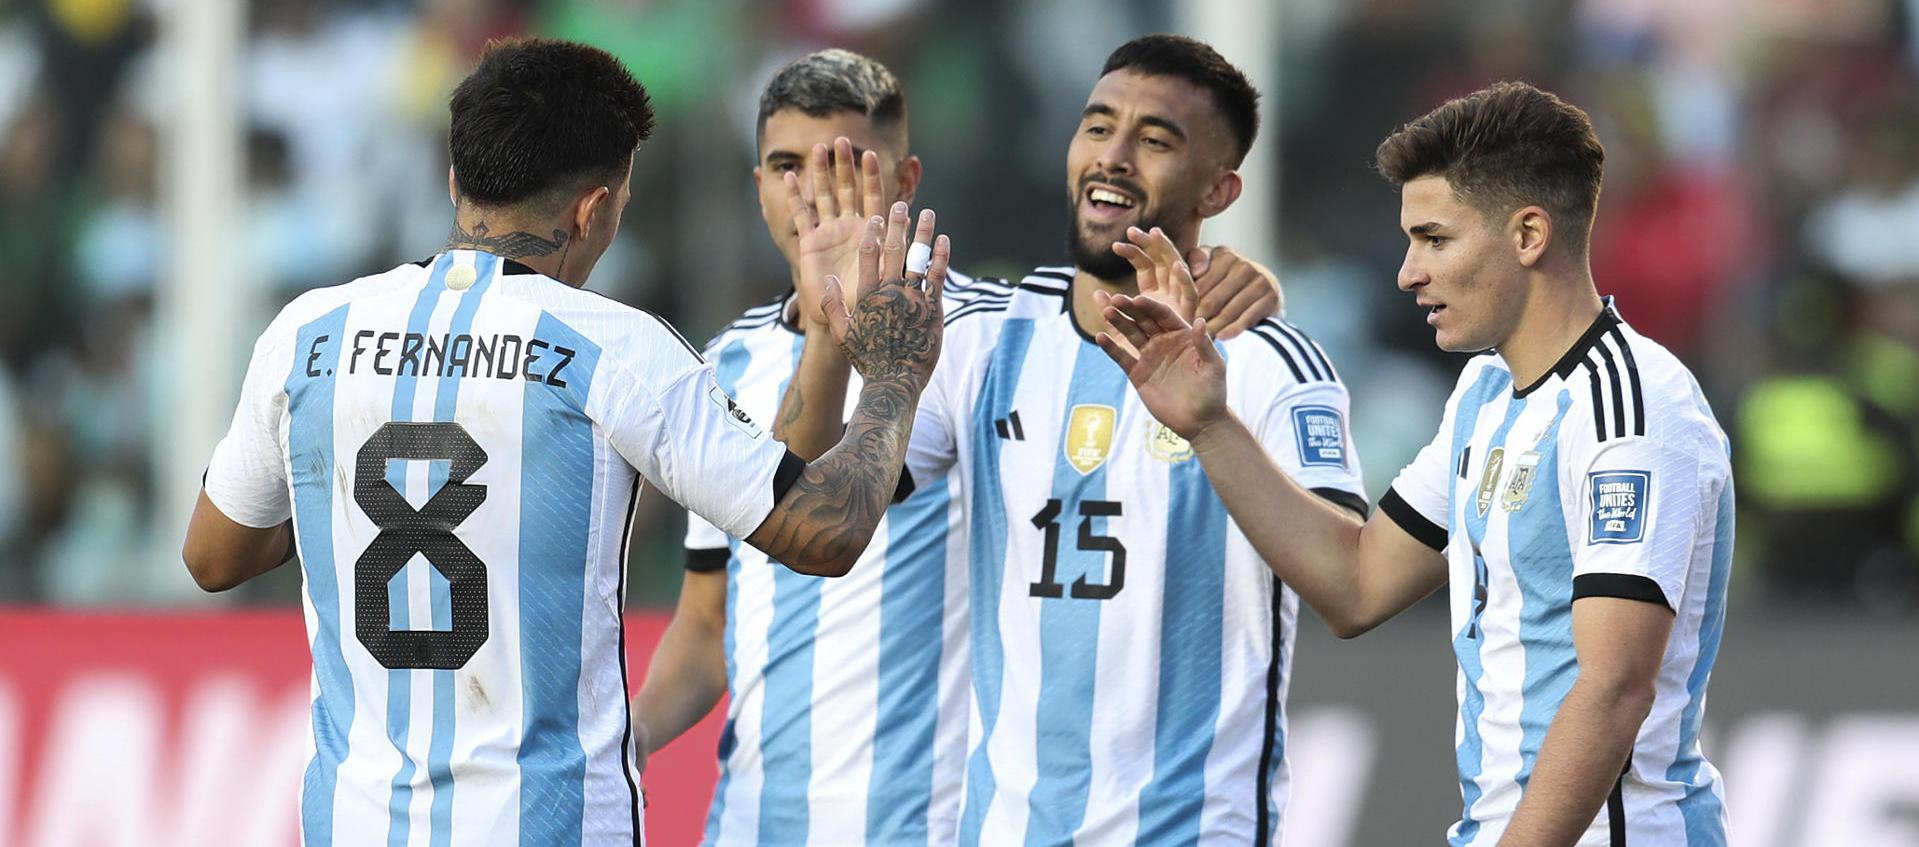 Jugadores de la selección Argentina celebrando uno de los tantos.